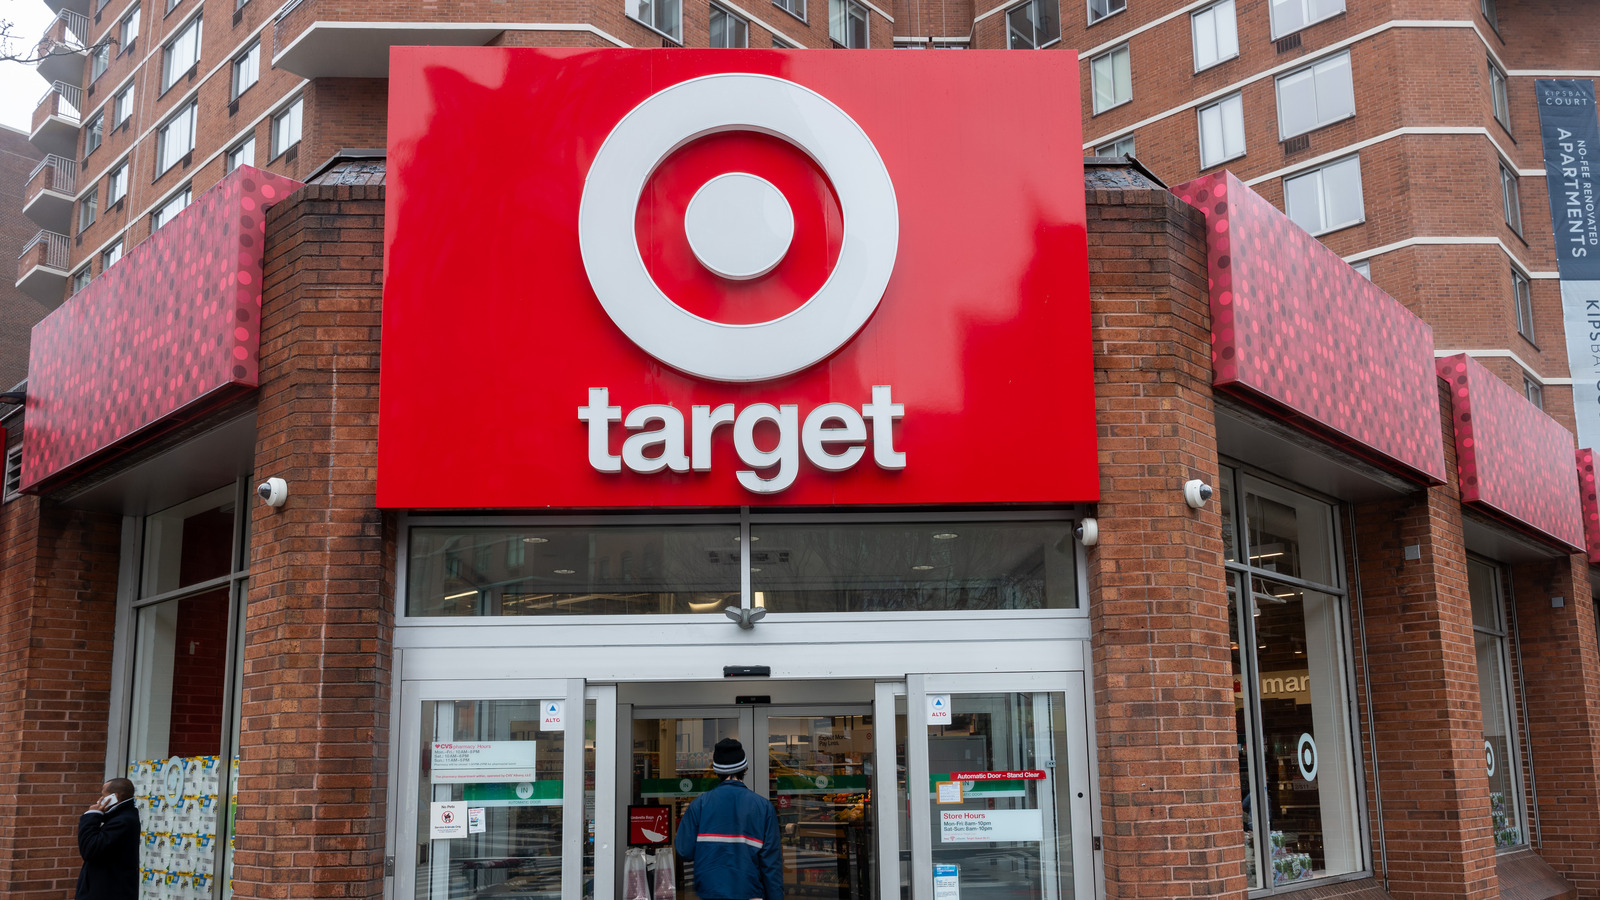 Las 5 mejores herramientas económicas que vale la pena comprar en Target